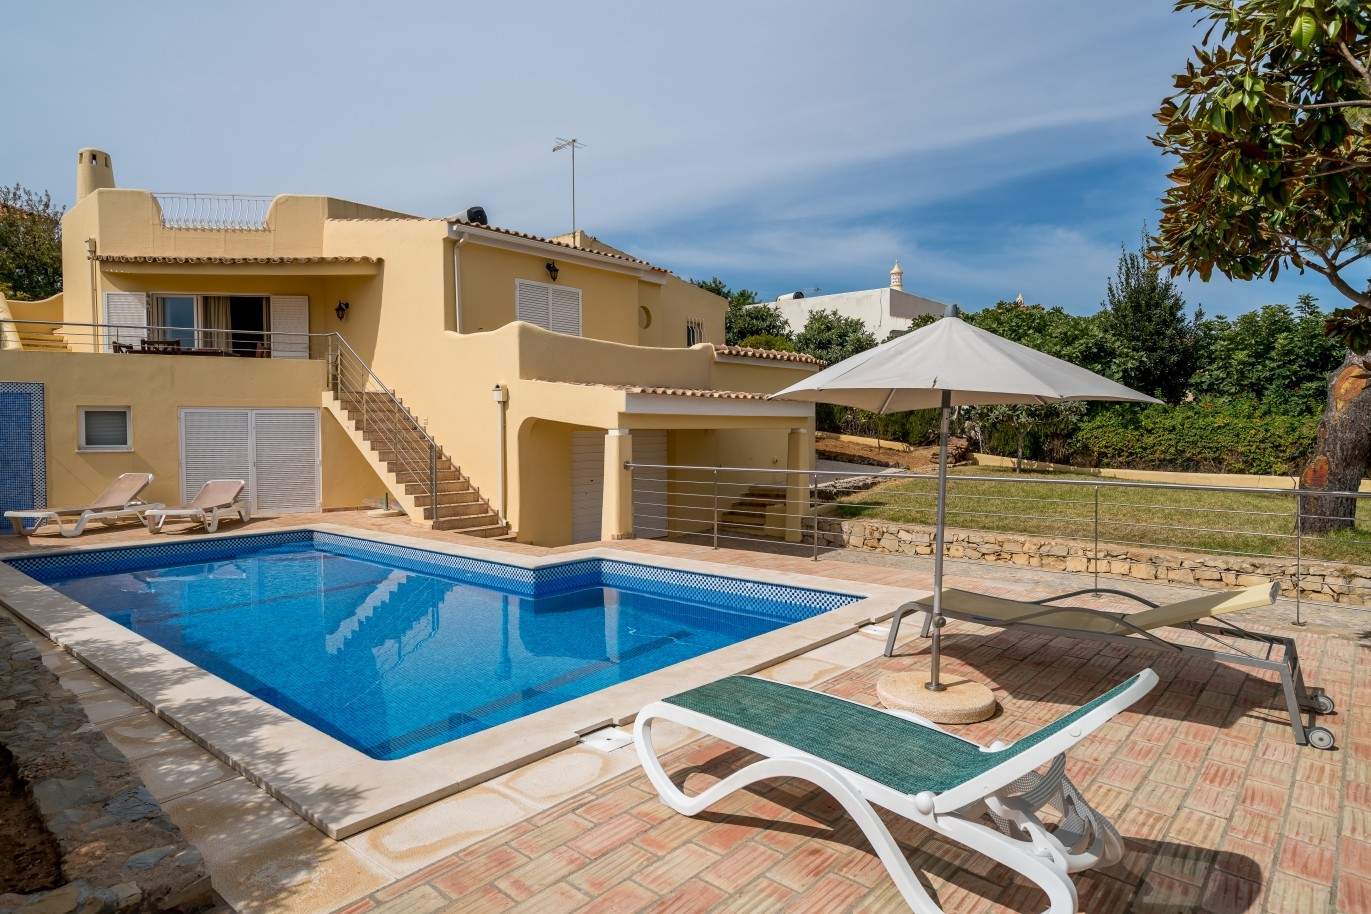 Moradia para venda, com piscina, perto da praia, Albufeira, Algarve_68457